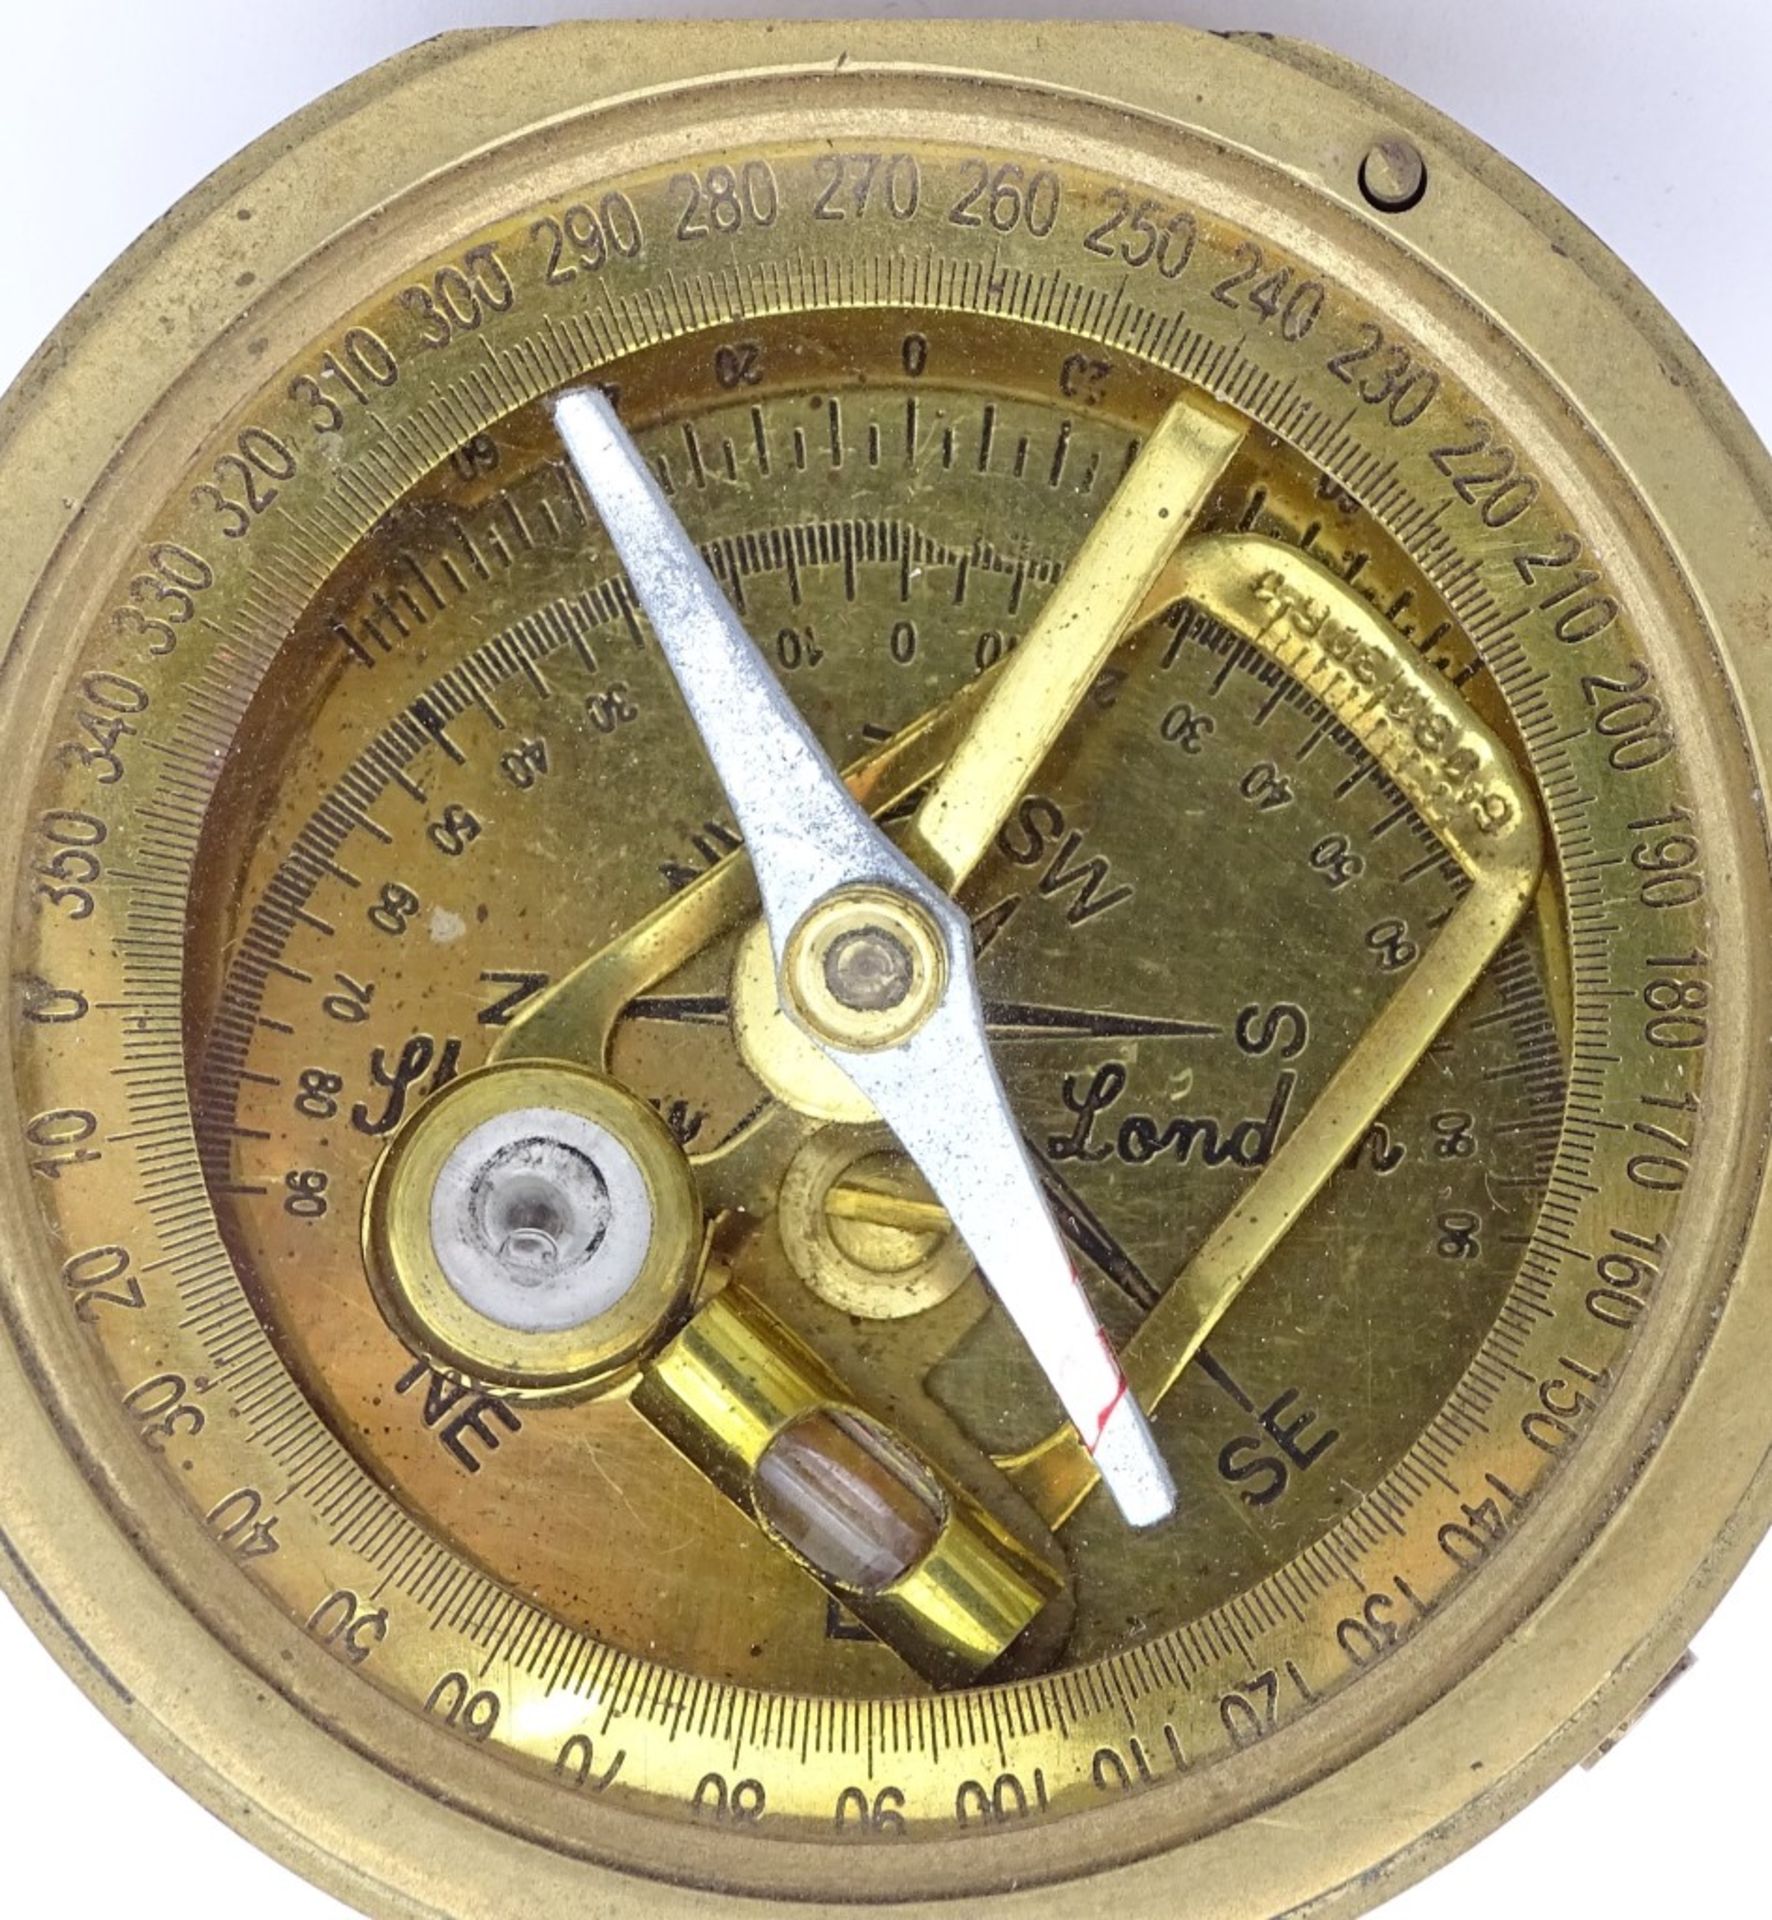 Kl.Kompass "Stanley London" Messinggehäuse mit innliegender Wasserwaage,7,0x8,0cm - Bild 3 aus 6